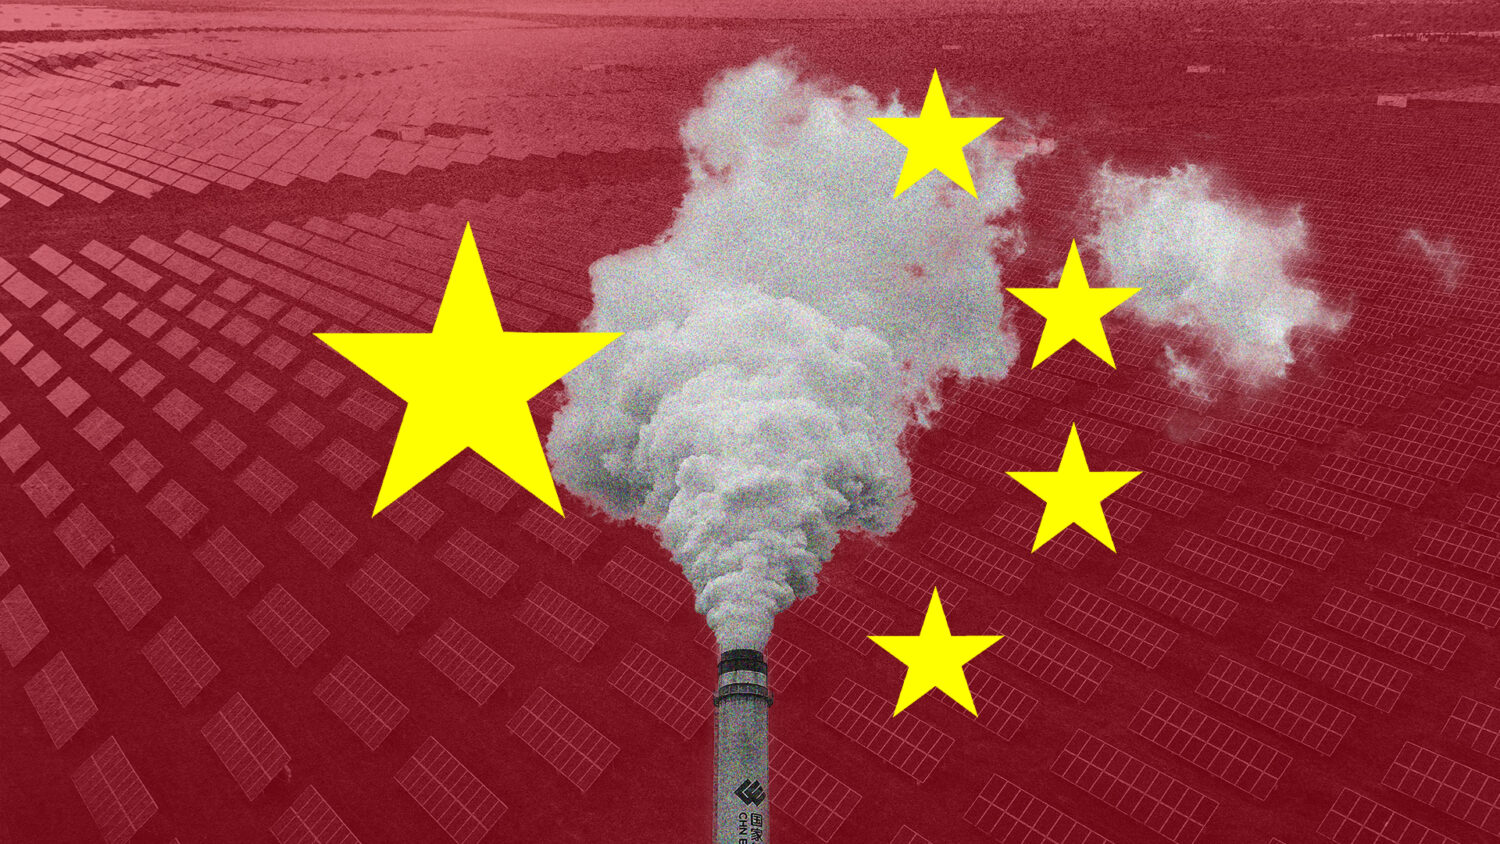 Εν μέσω COP26, η Κίνα αυξάνει την παραγωγή άνθρακα